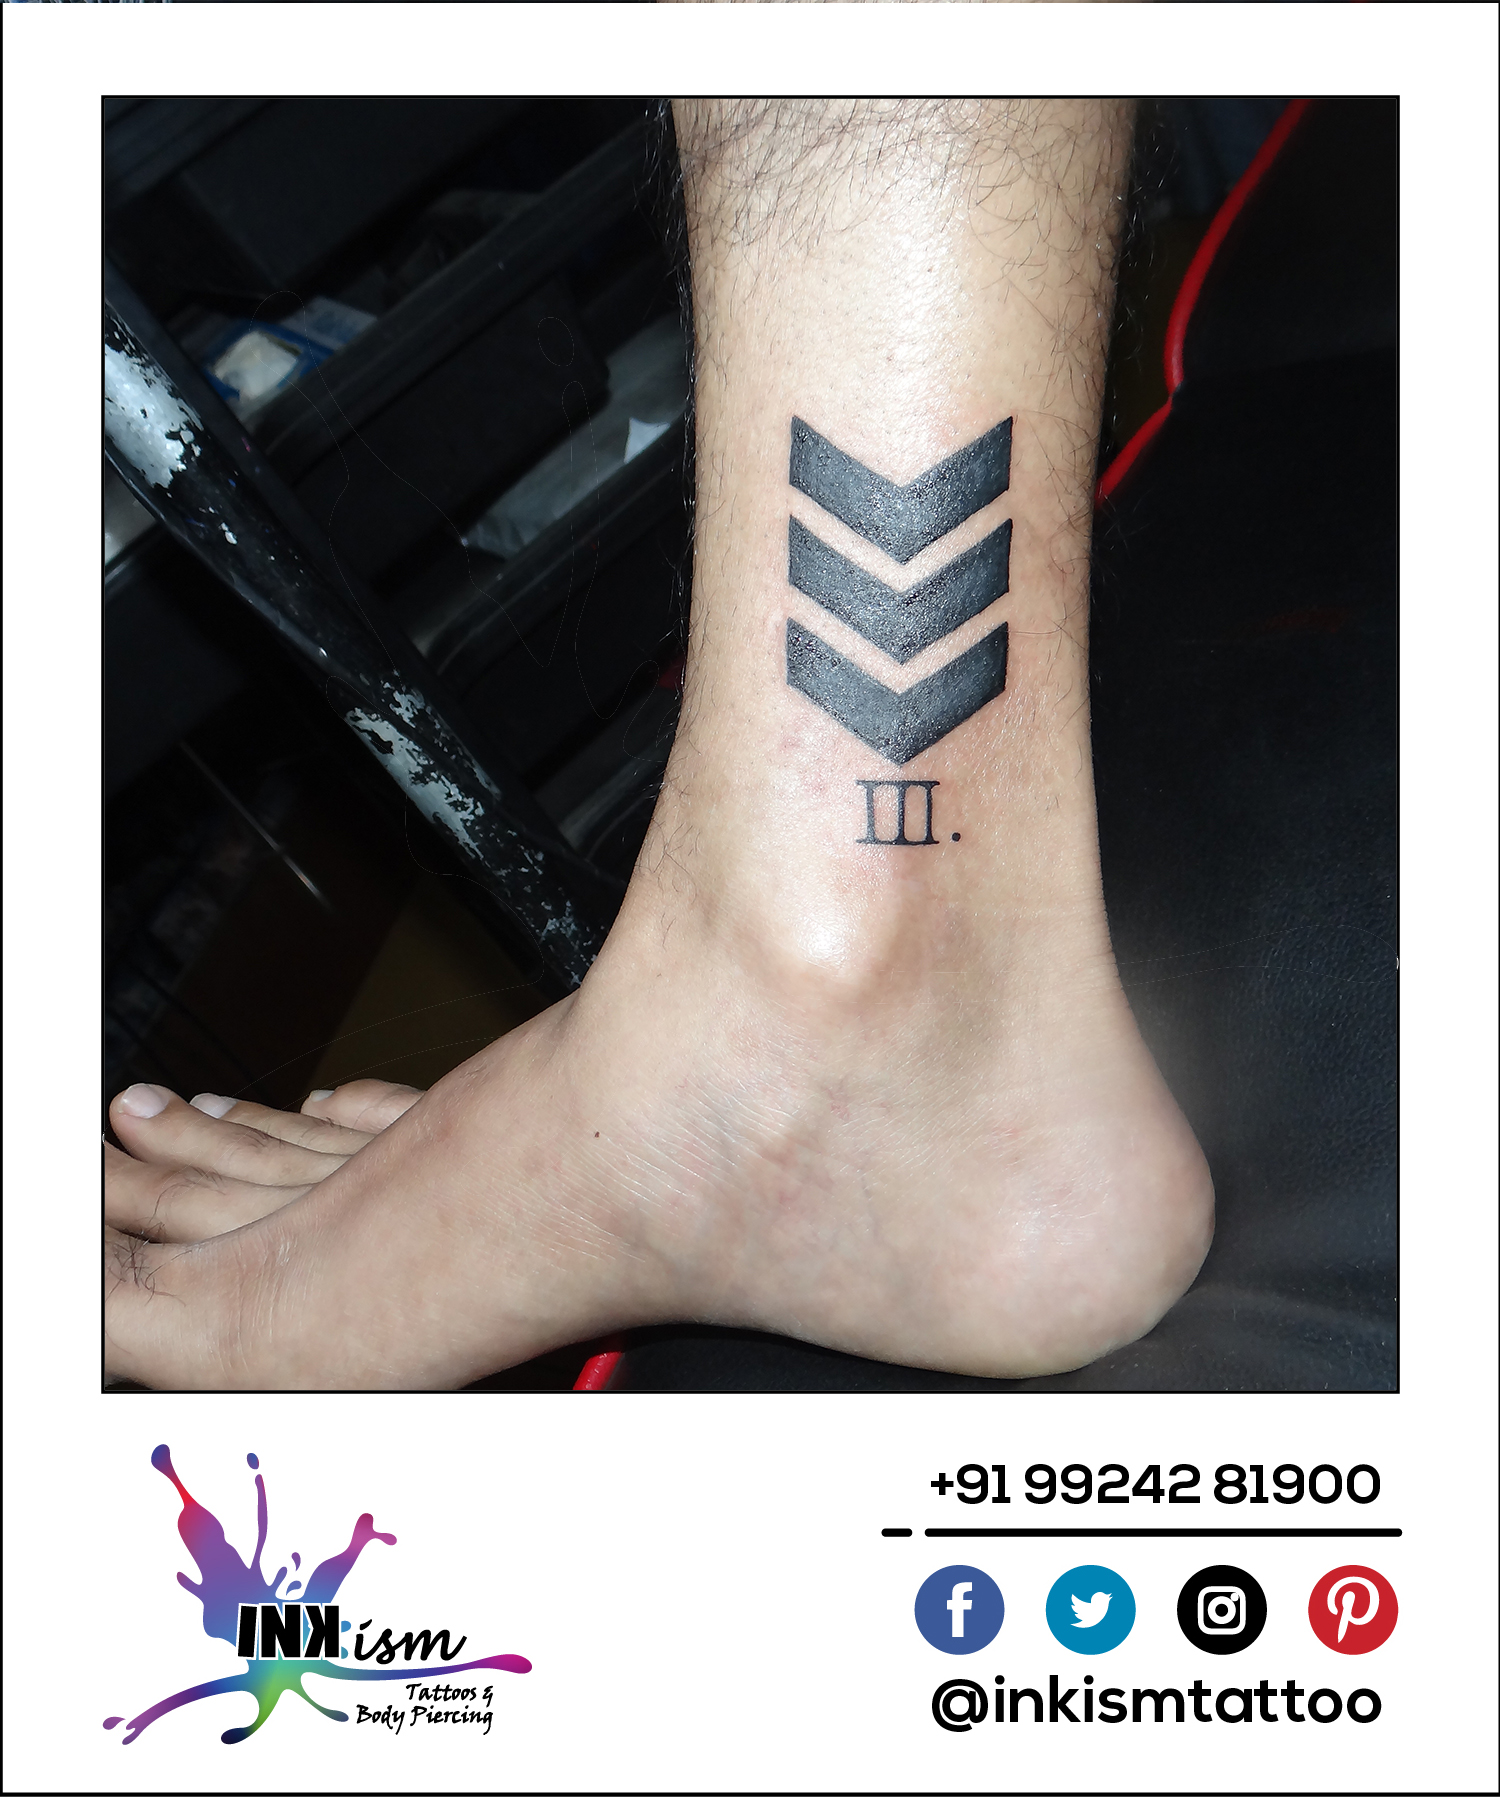 Arrow tattoo, Roman number tattoo, Inkism tattoo and body piercing rajkot gujarat